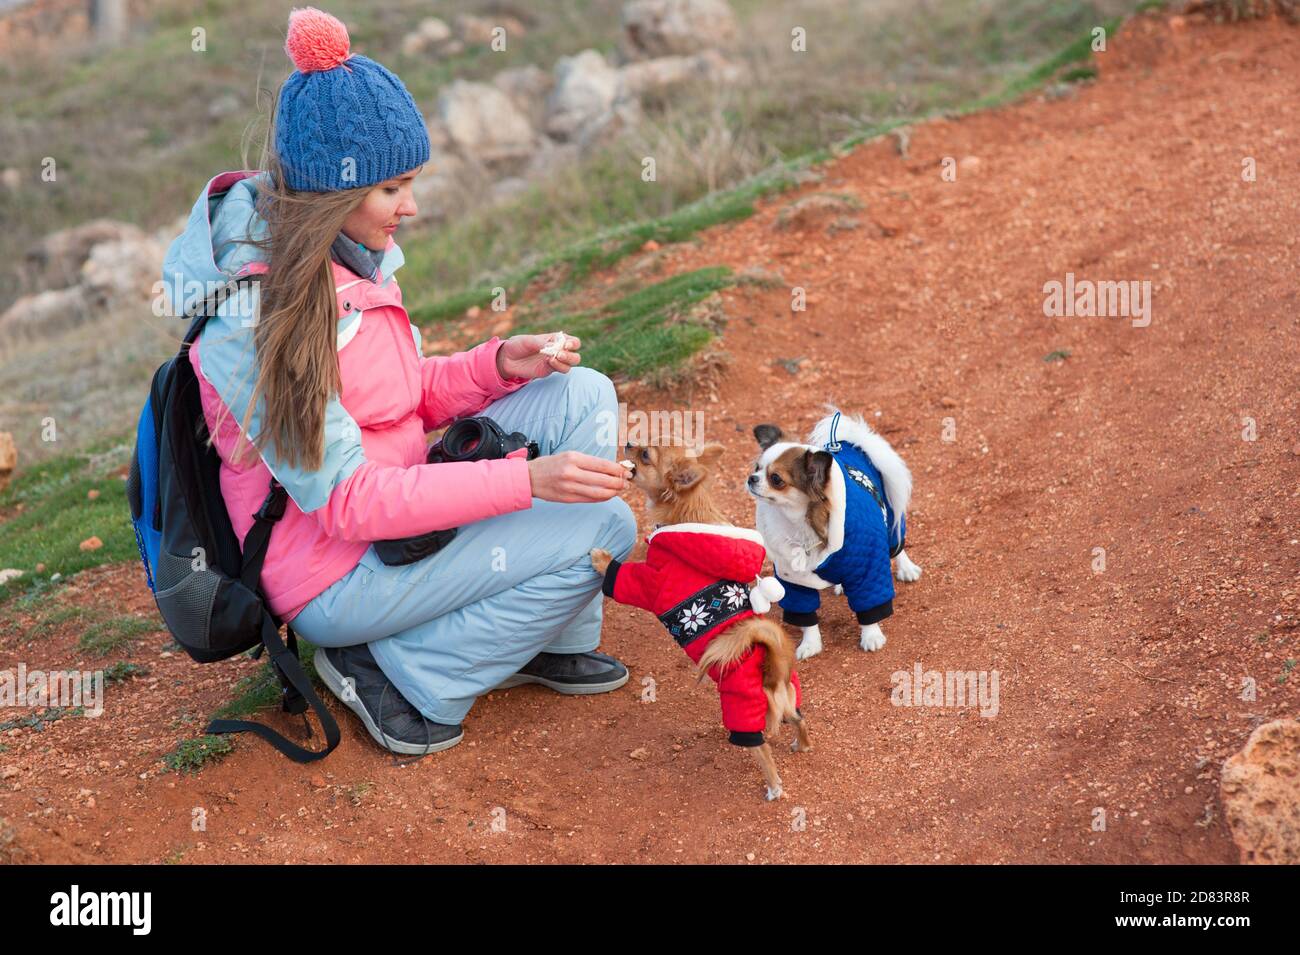 giovane donna carina che si prende cura di lei in abiti invernali che la alimentano piccoli cani chihuahua vestiti in costume blu e rosso durante attività ricreative all'aperto Foto Stock